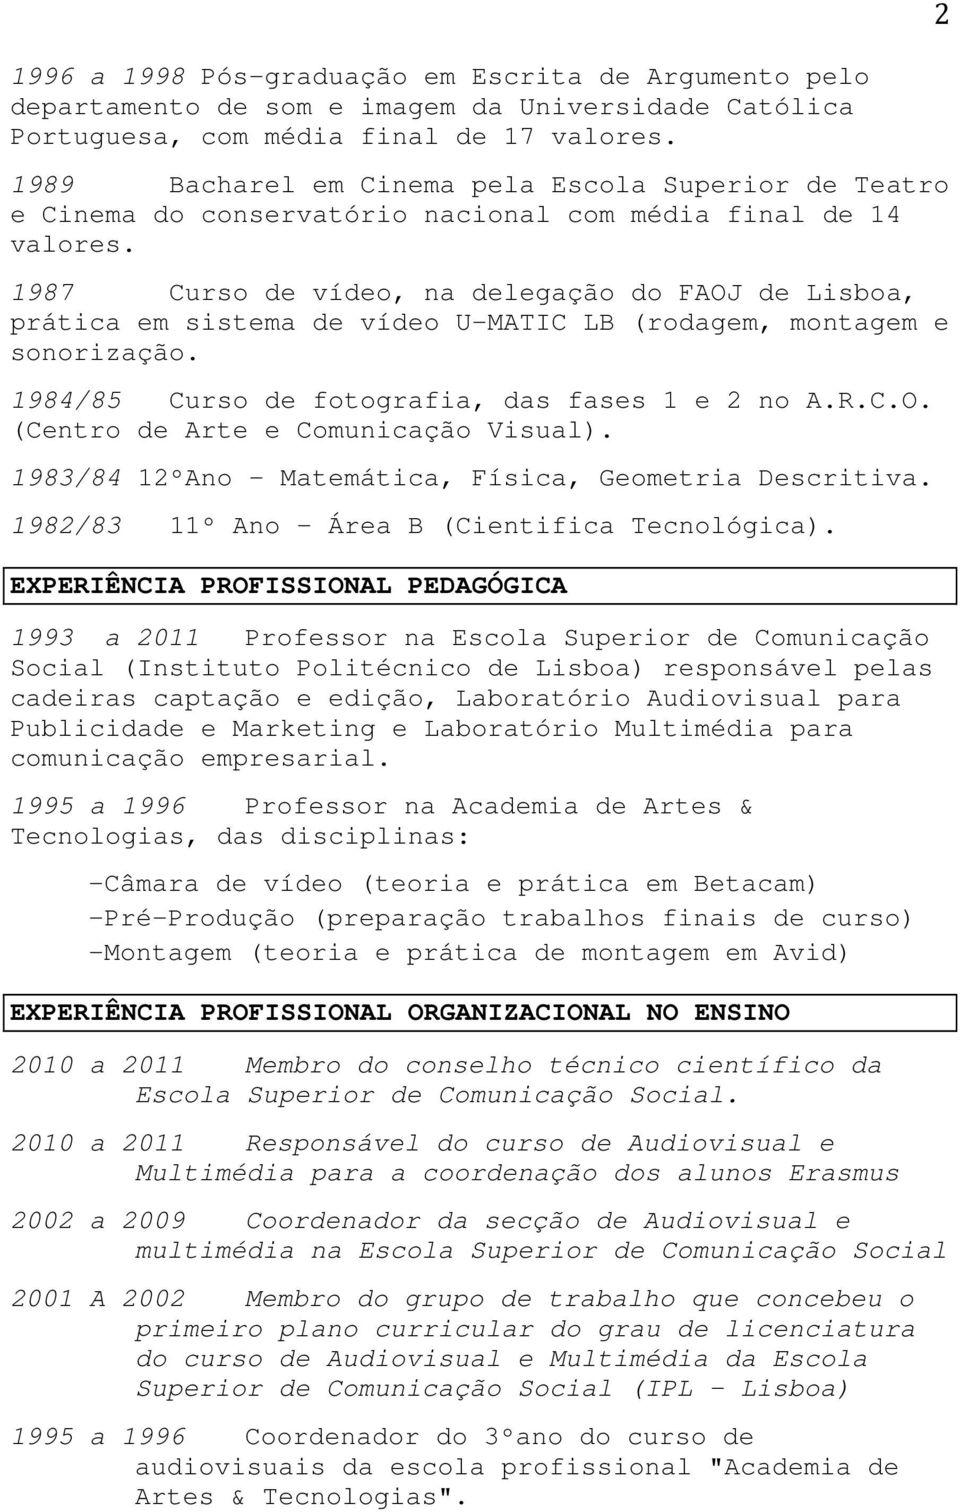 1987 Curso de vídeo, na delegação do FAOJ de Lisboa, prática em sistema de vídeo U-MATIC LB (rodagem, montagem e sonorização. 1984/85 Curso de fotografia, das fases 1 e 2 no A.R.C.O. (Centro de Arte e Comunicação Visual).